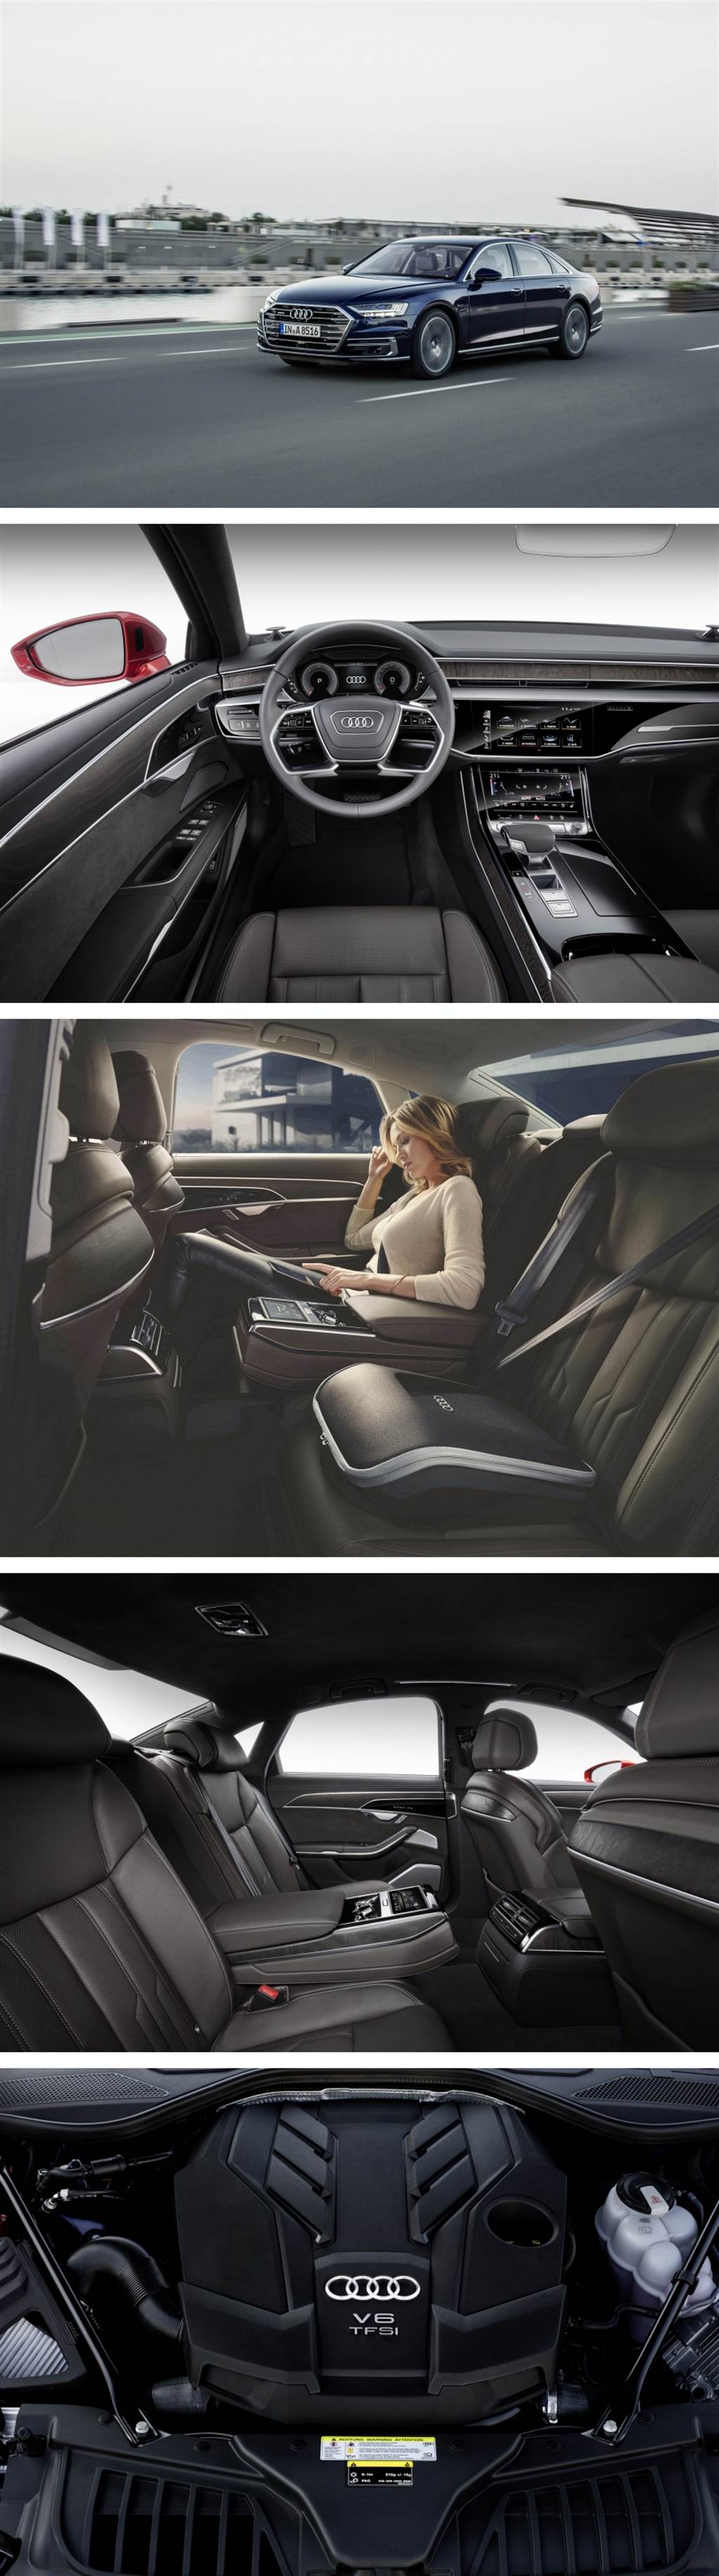 短軸取消 3.0 TDI 柴油、導入 3.0 V6 48V 汽油規格，2021年式 Audi A8/A8L 429萬起正式發售
